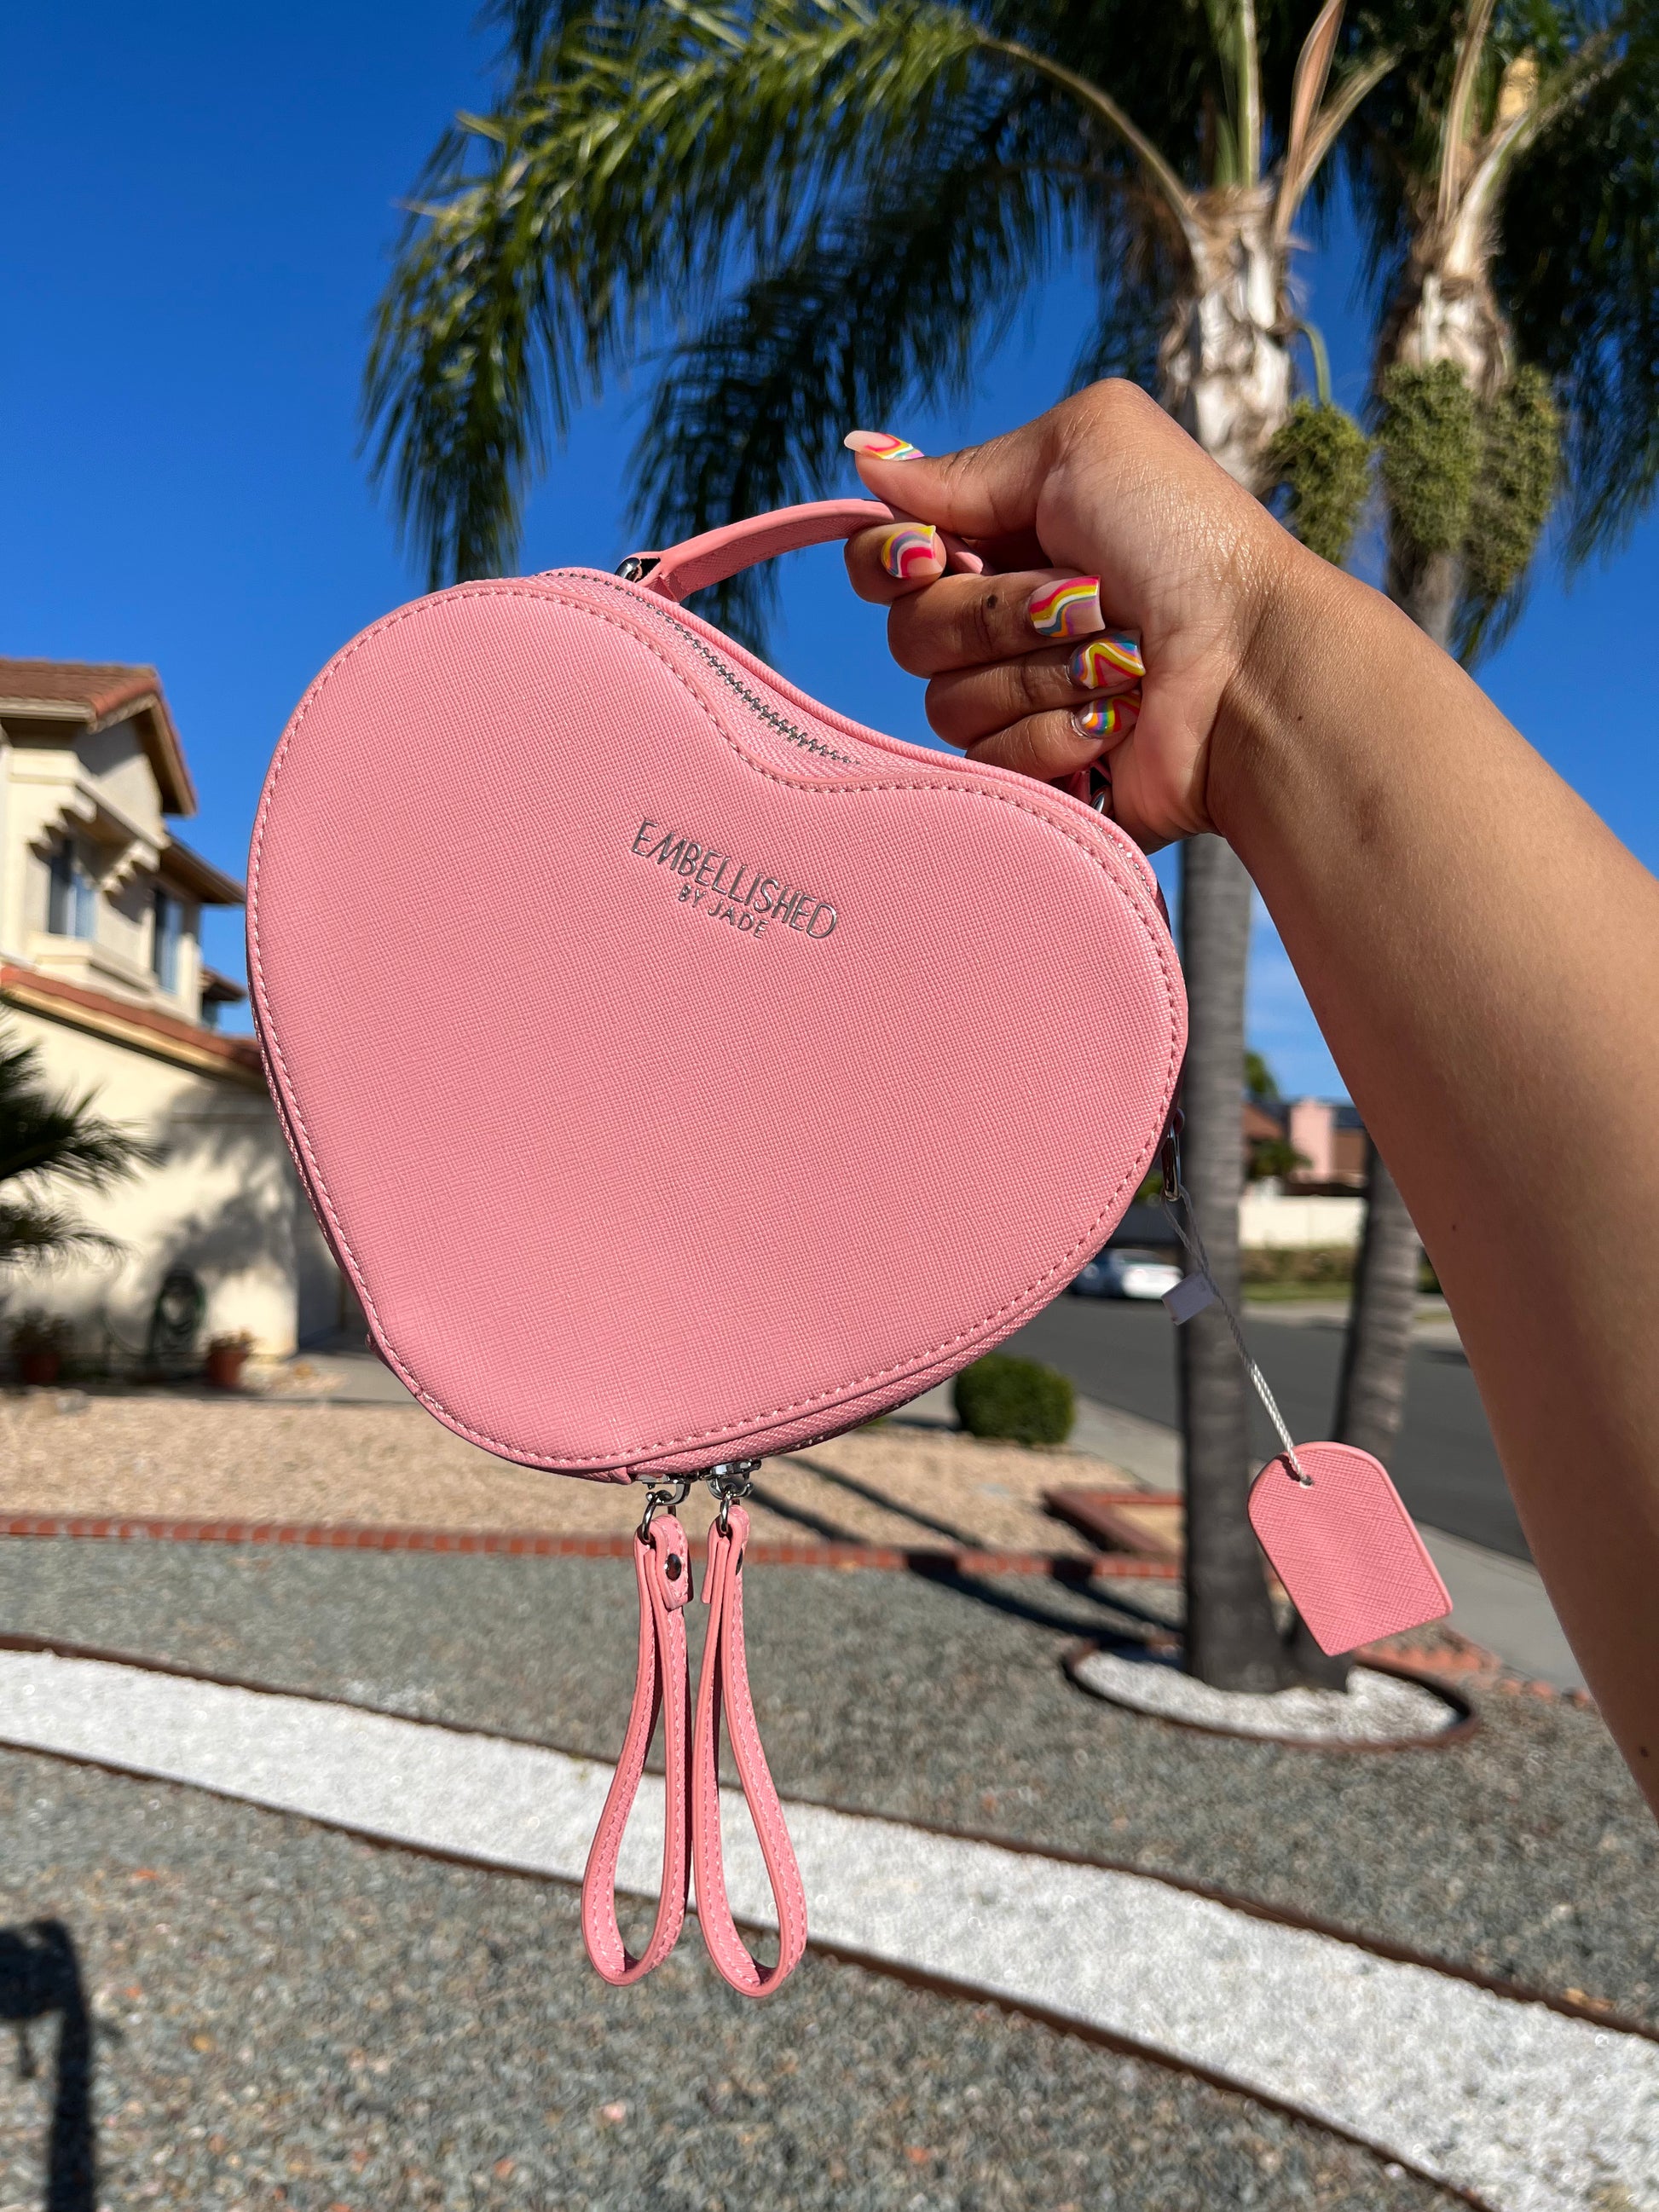 Love-Struck Bag | Pink Heart Purse